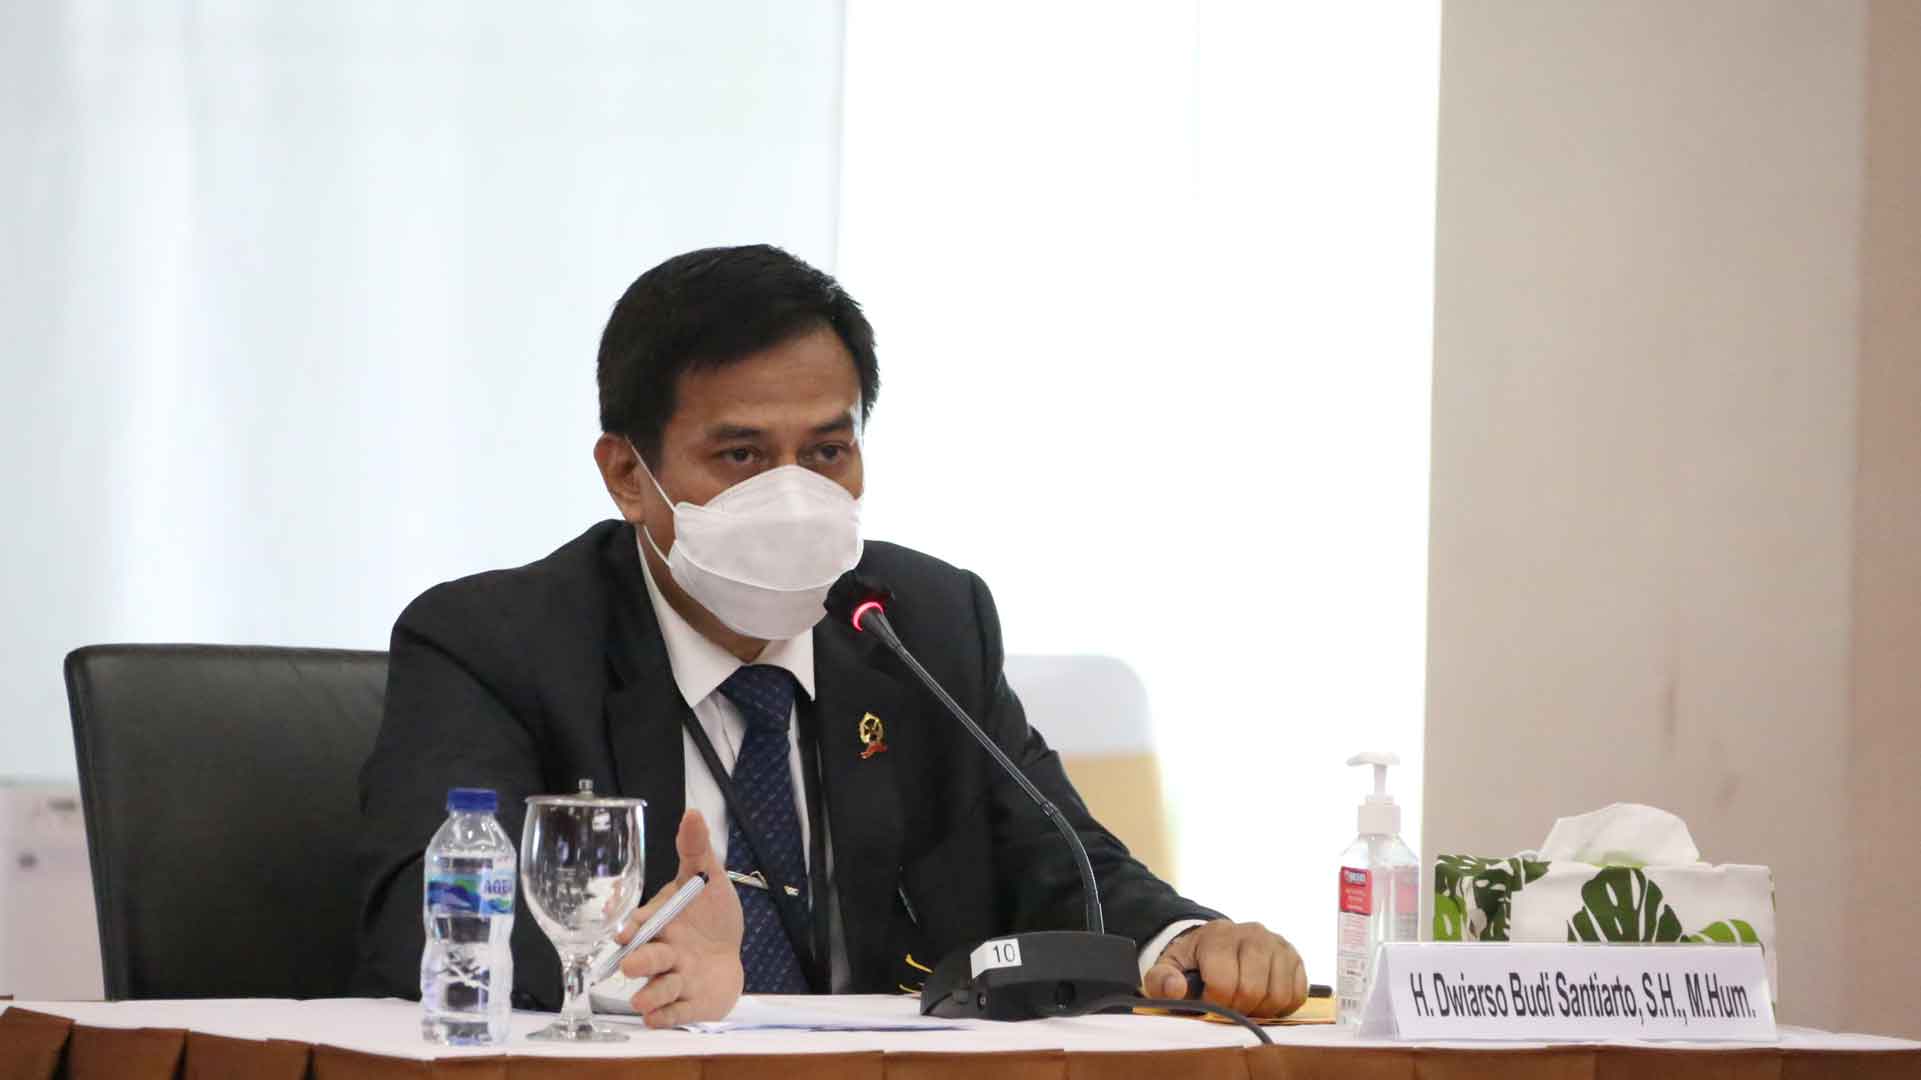 CHA Dwiarso Budi Santiarto: Pengurangan atau Penambahan Pidana Itu Lumrah, Asalkan Sesuai Ketentuan